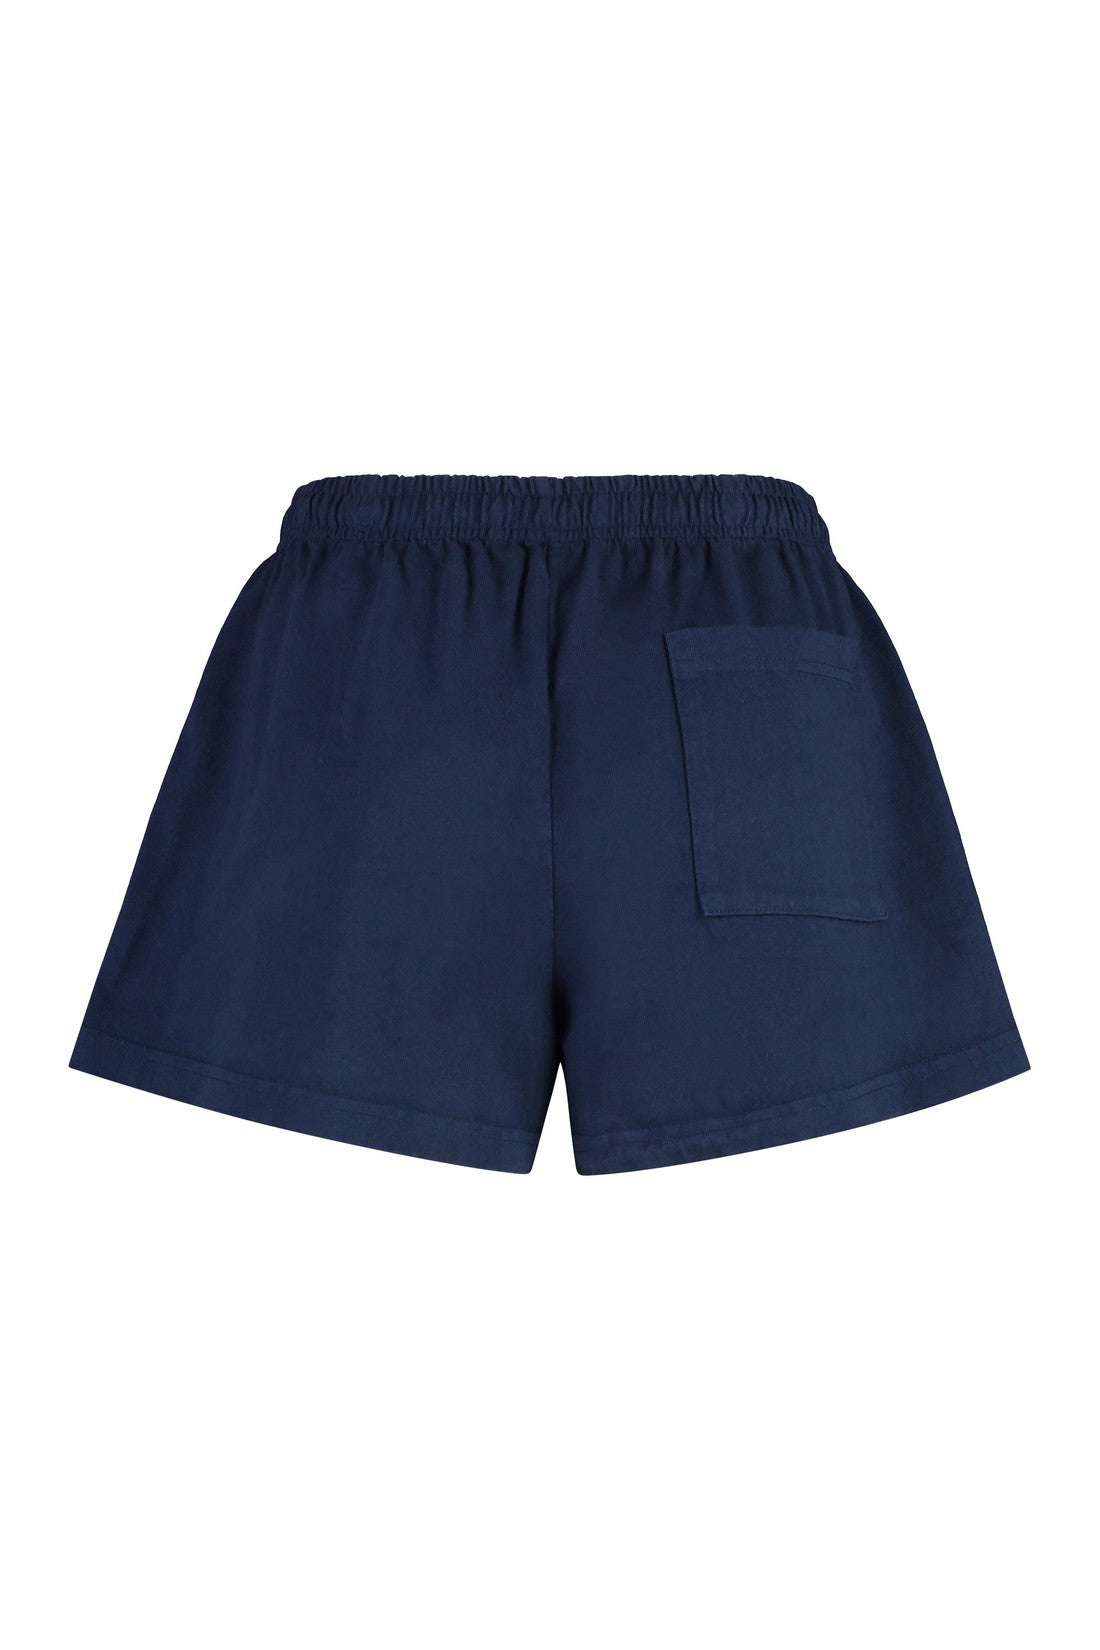 Sporty & Rich-OUTLET-SALE-Cotton shorts-ARCHIVIST